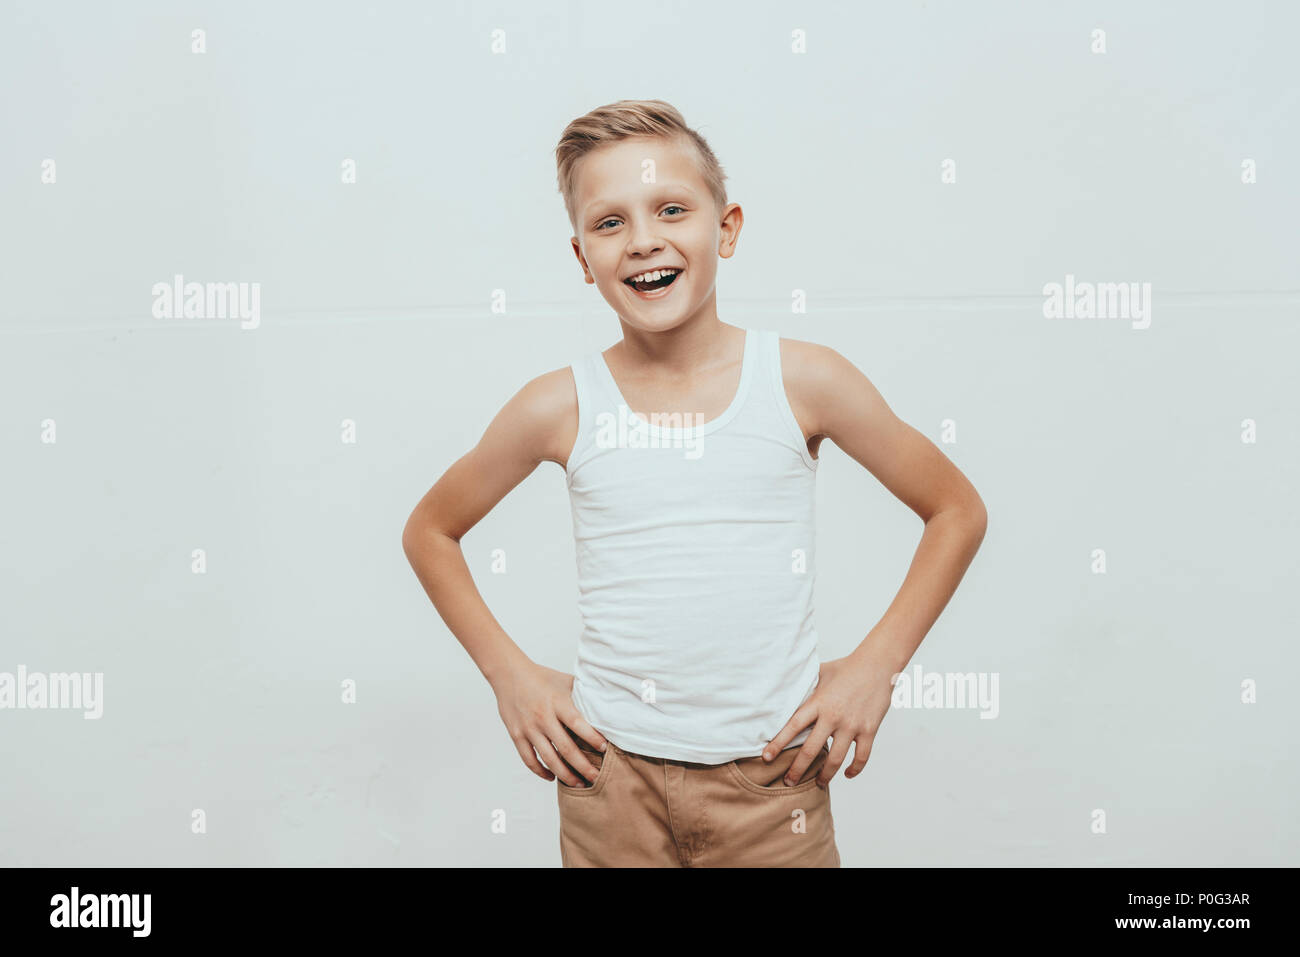 Young smiling boy en débardeur blanc debout avec les mains sur les hanches et looking at camera, isolated on white Banque D'Images